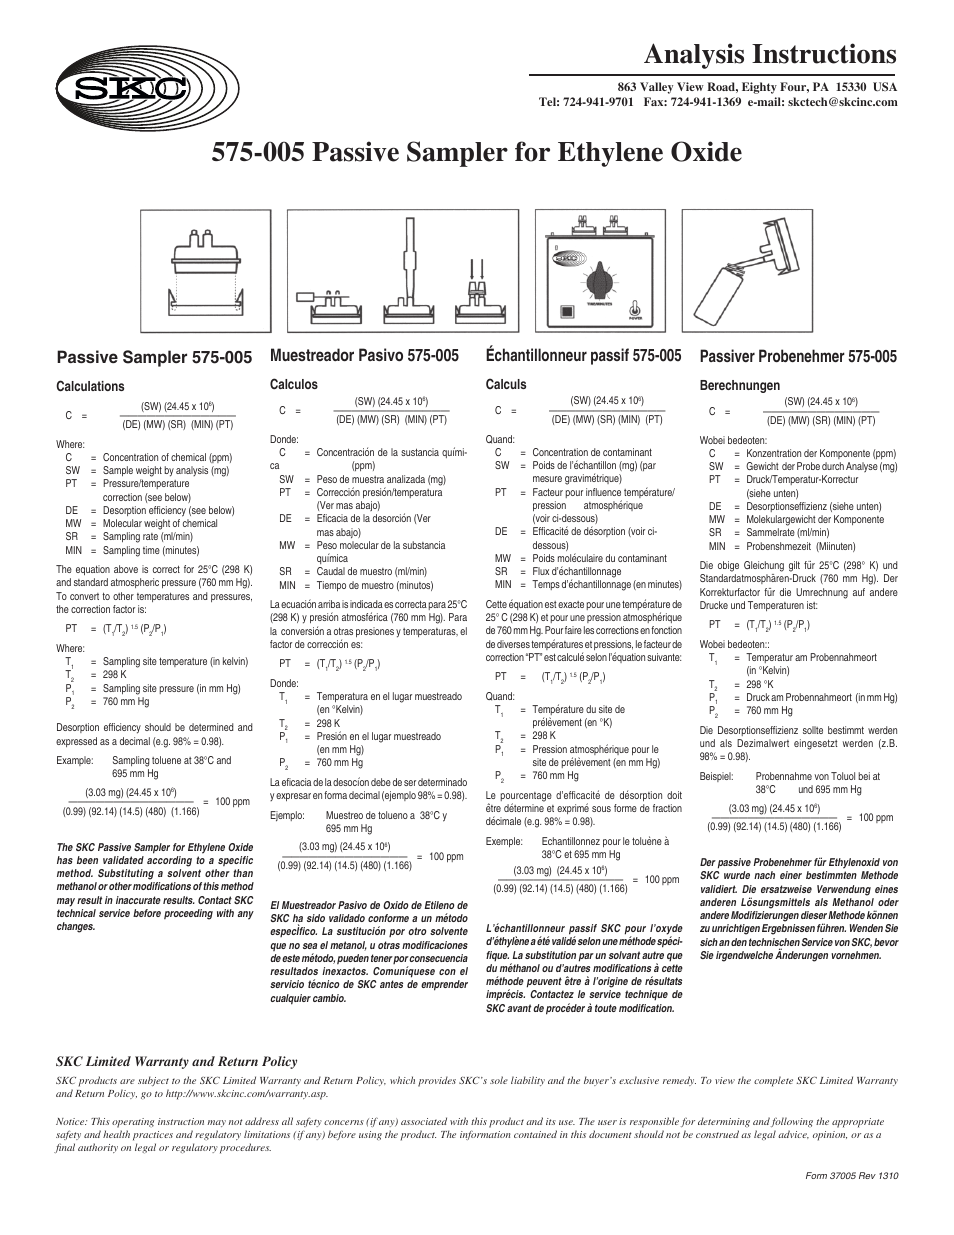 575-005 Passive Sampler for Ethylene Oxide Analysis Instructions